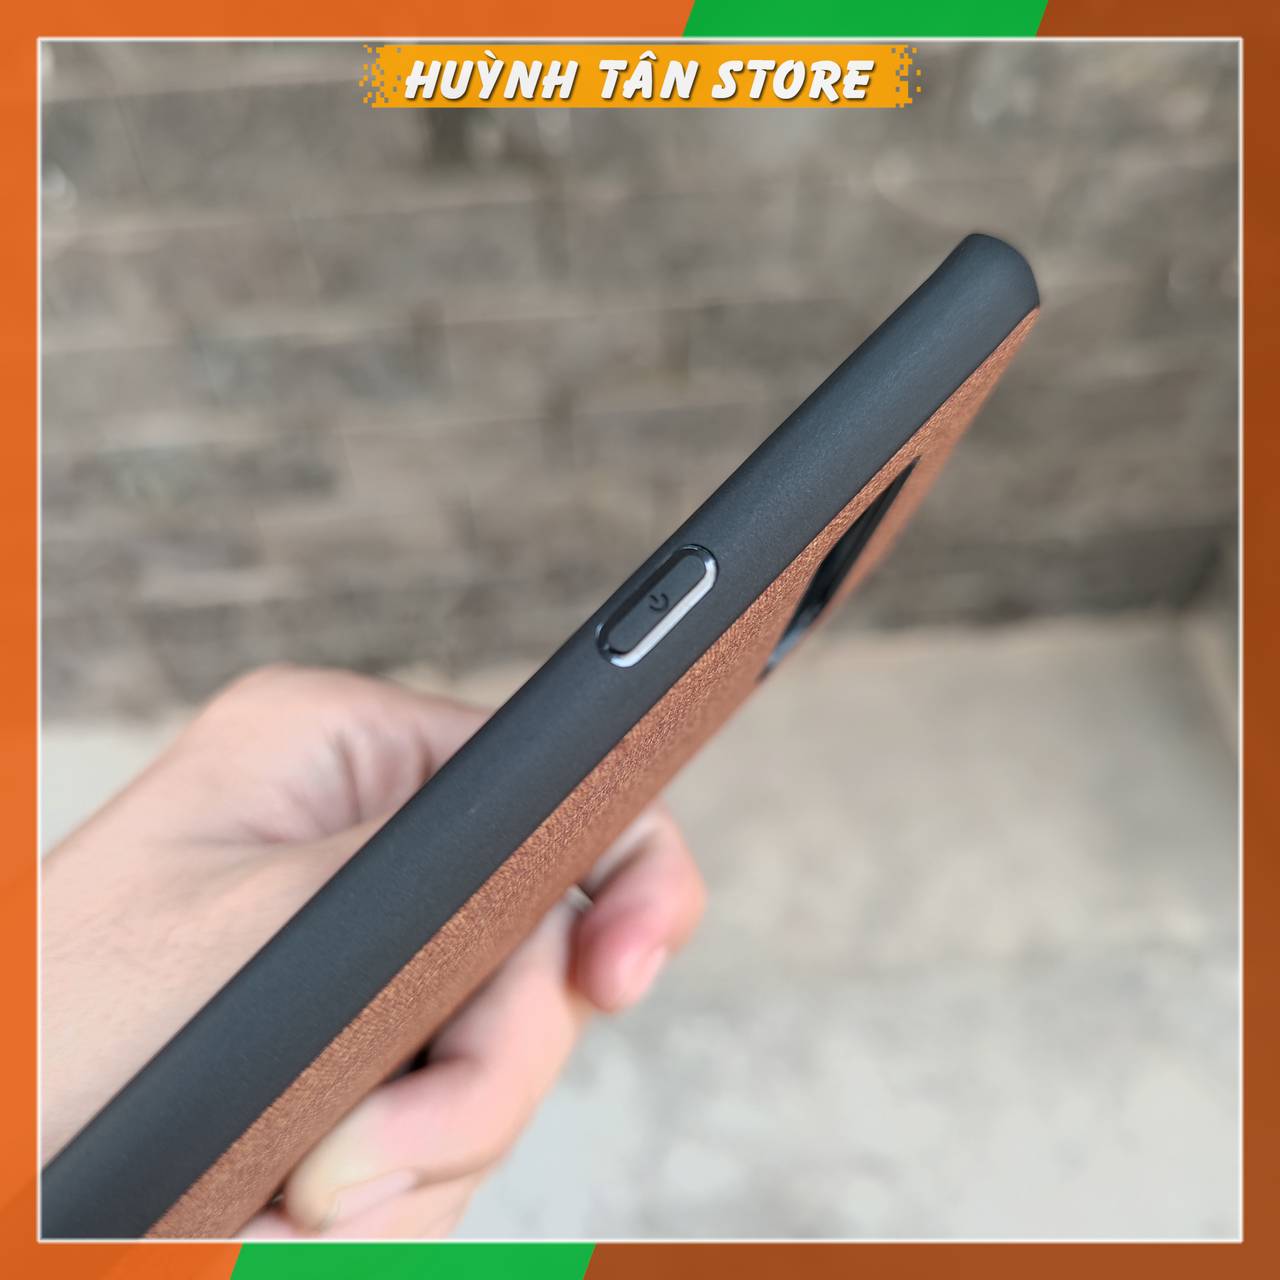 Ốp lưng s10 5g chống vân tay nhựa cứng viền đen giả vải JEAN 1 màu phụ kiện điện thoại huỳnh tân store